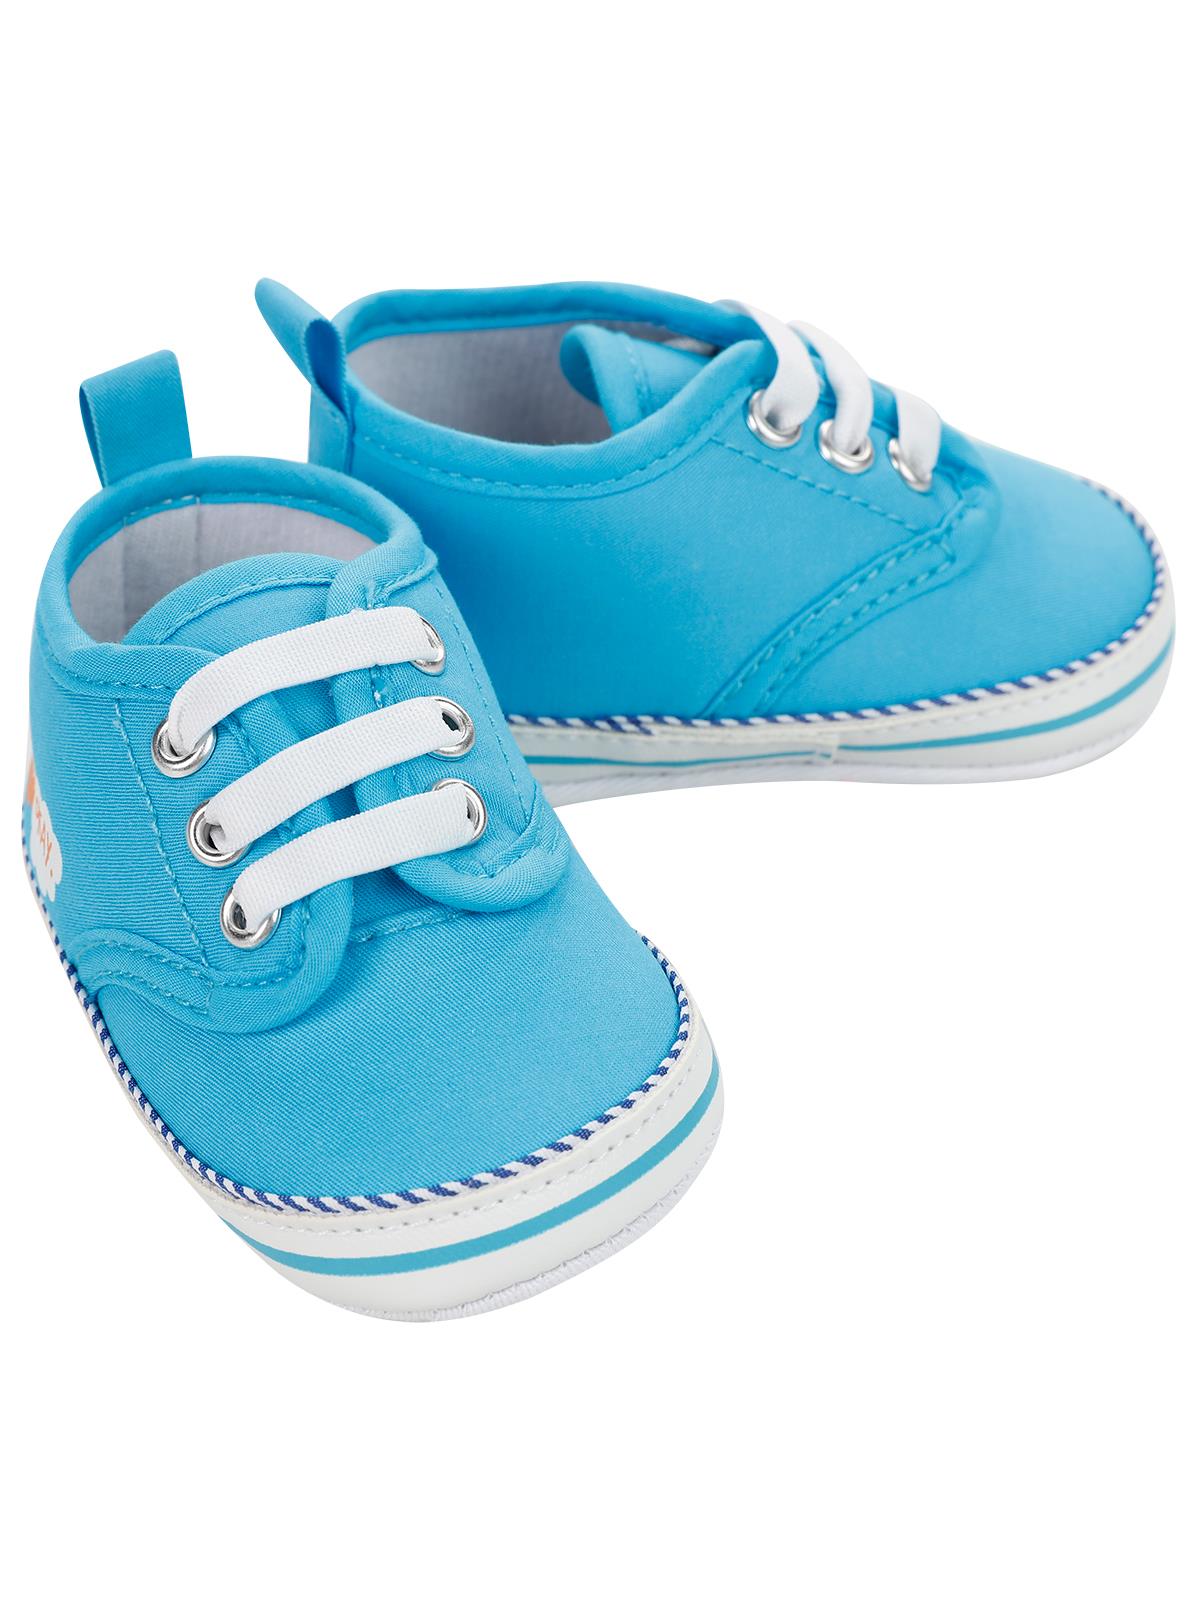 Civil Baby Erkek Bebek Patik Ayakkabı 18-20 Numara Mavi